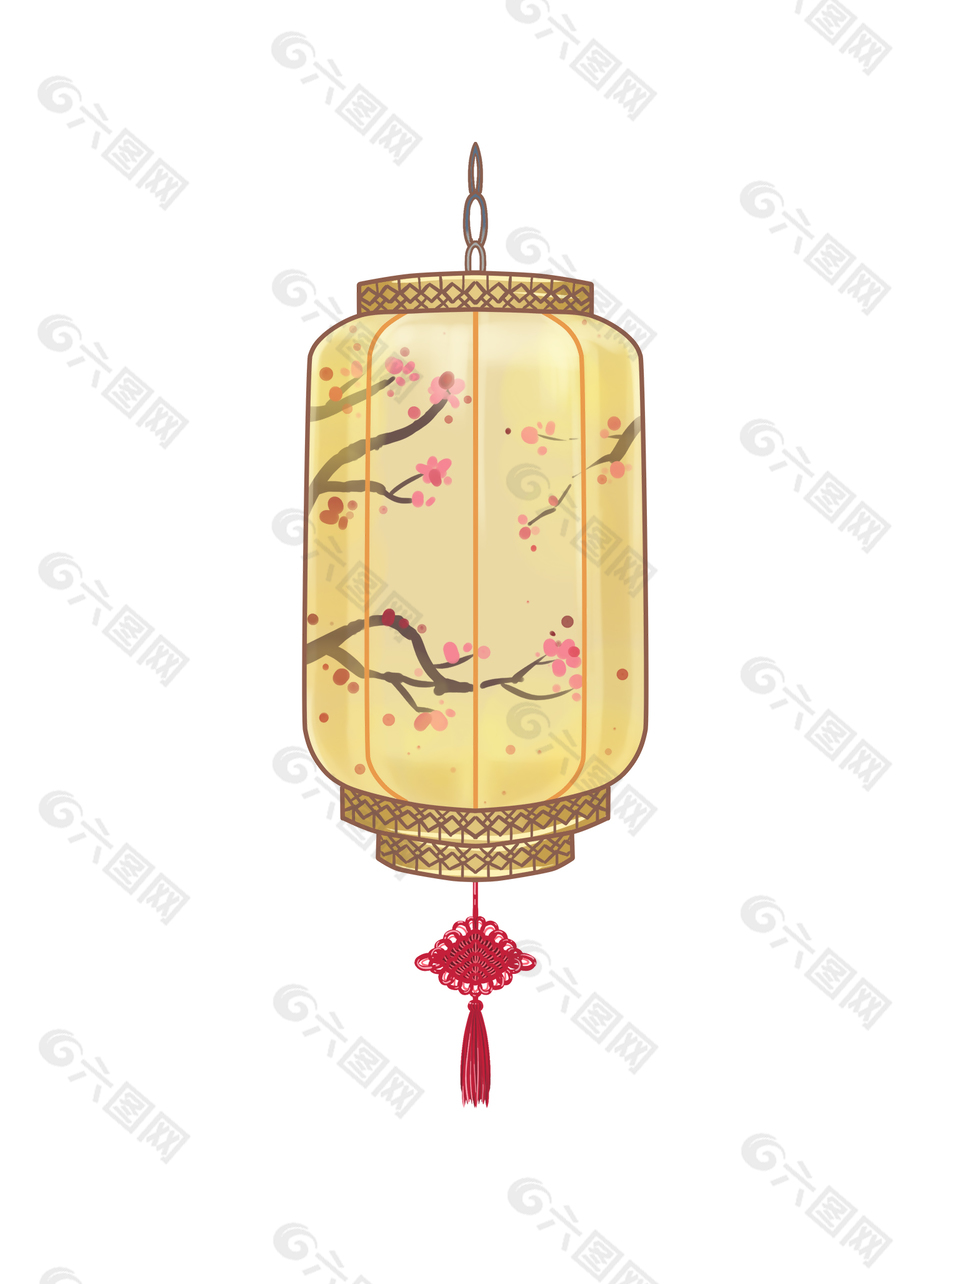 中式传统灯笼图片下载